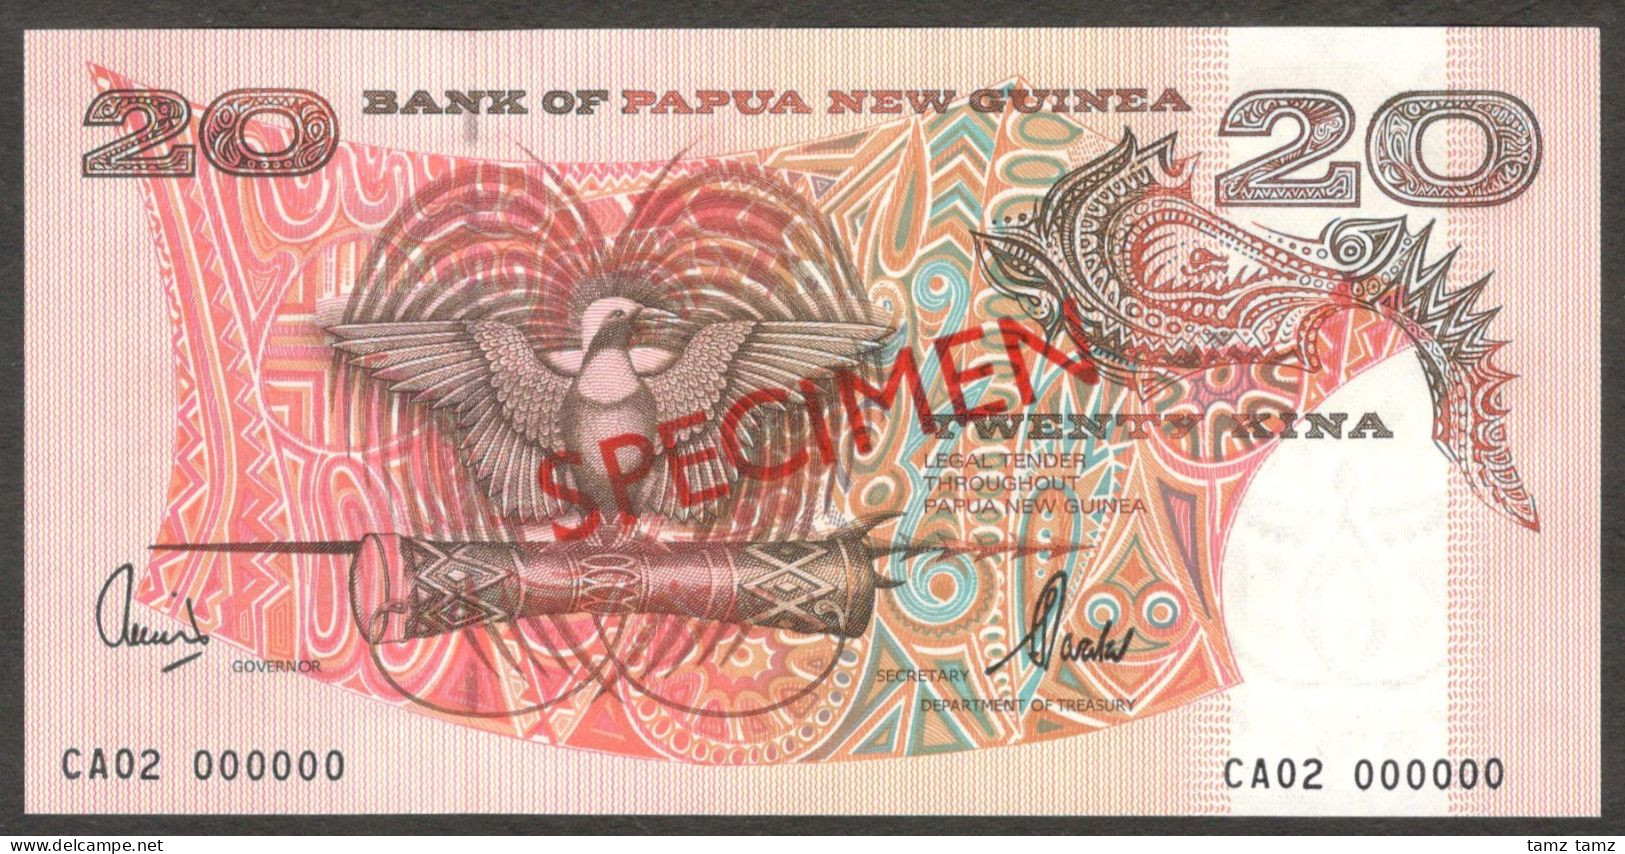 Papua New Guinea 20 Kina P-10es 2002 Specimen CA02 000000 UNC - Papouasie-Nouvelle-Guinée